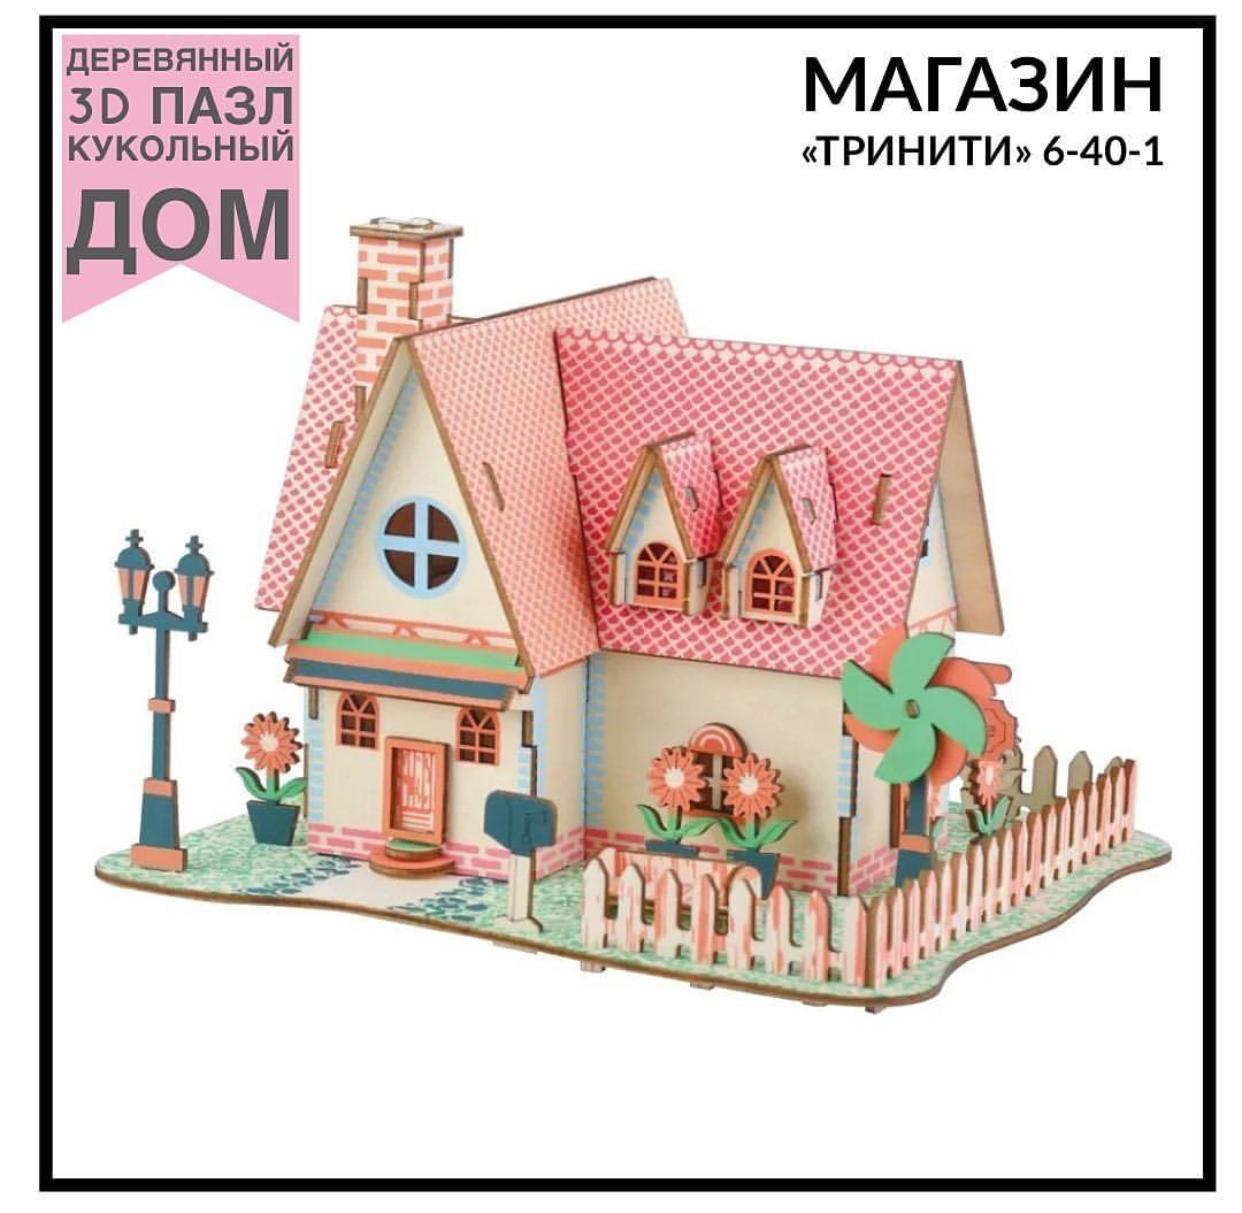 Кукольный дом 3D пазл 16,6*13,5*12 см